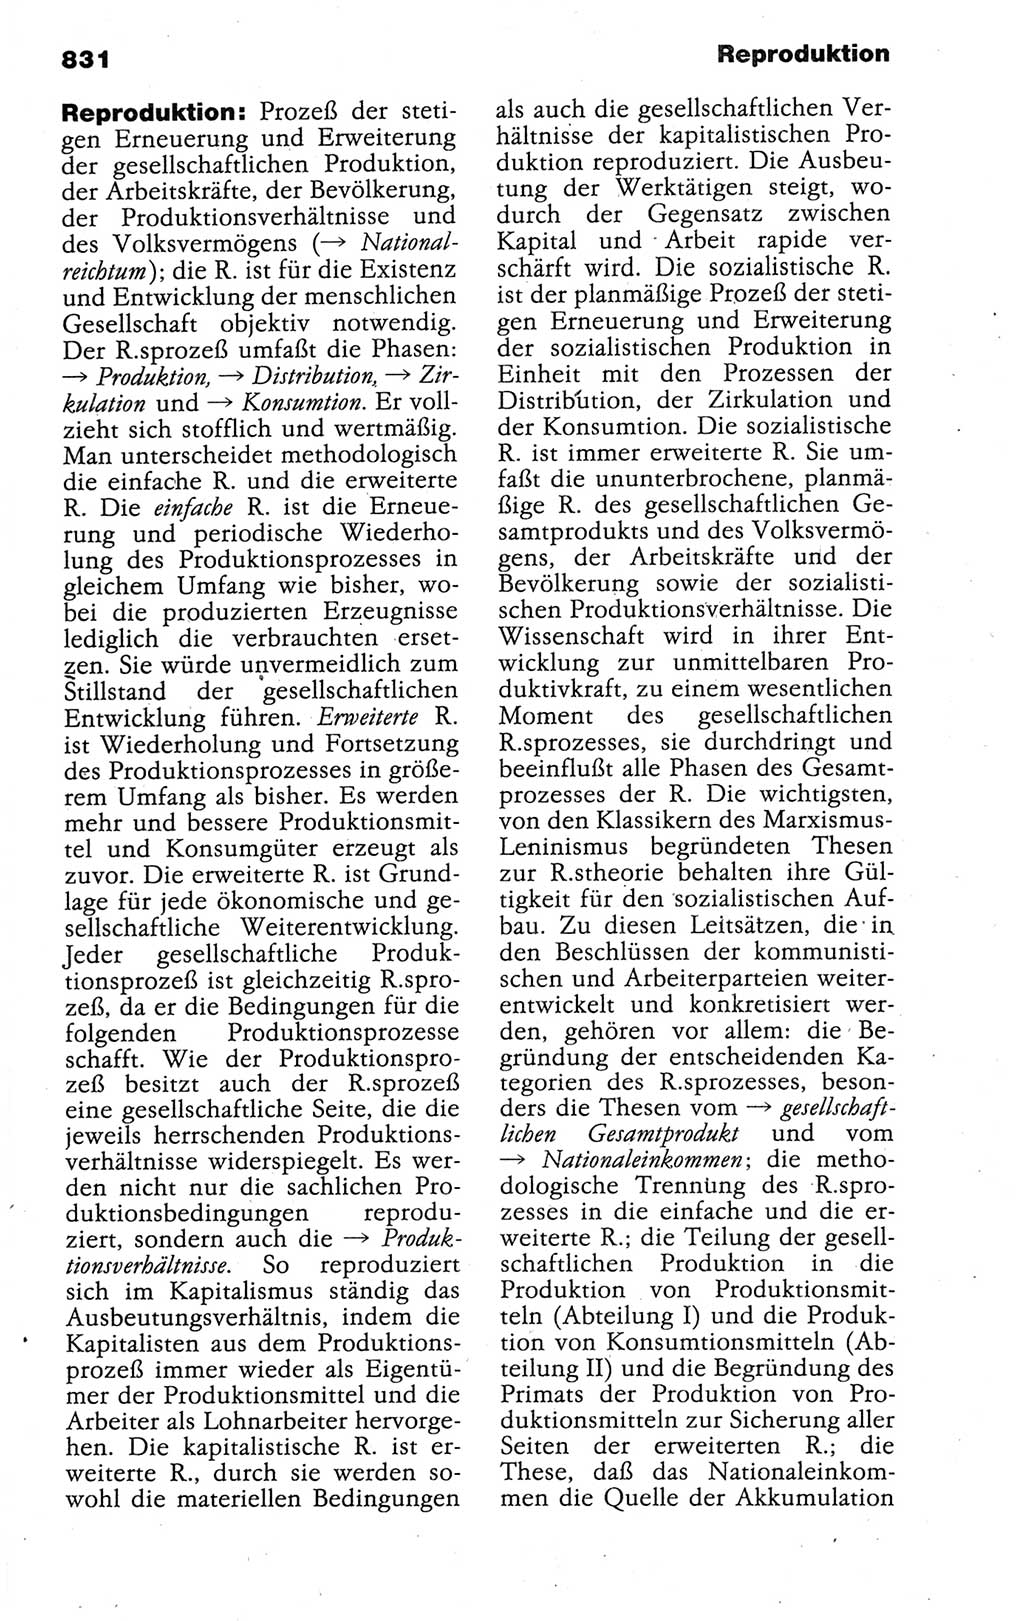 Kleines politisches Wörterbuch [Deutsche Demokratische Republik (DDR)] 1988, Seite 831 (Kl. pol. Wb. DDR 1988, S. 831)